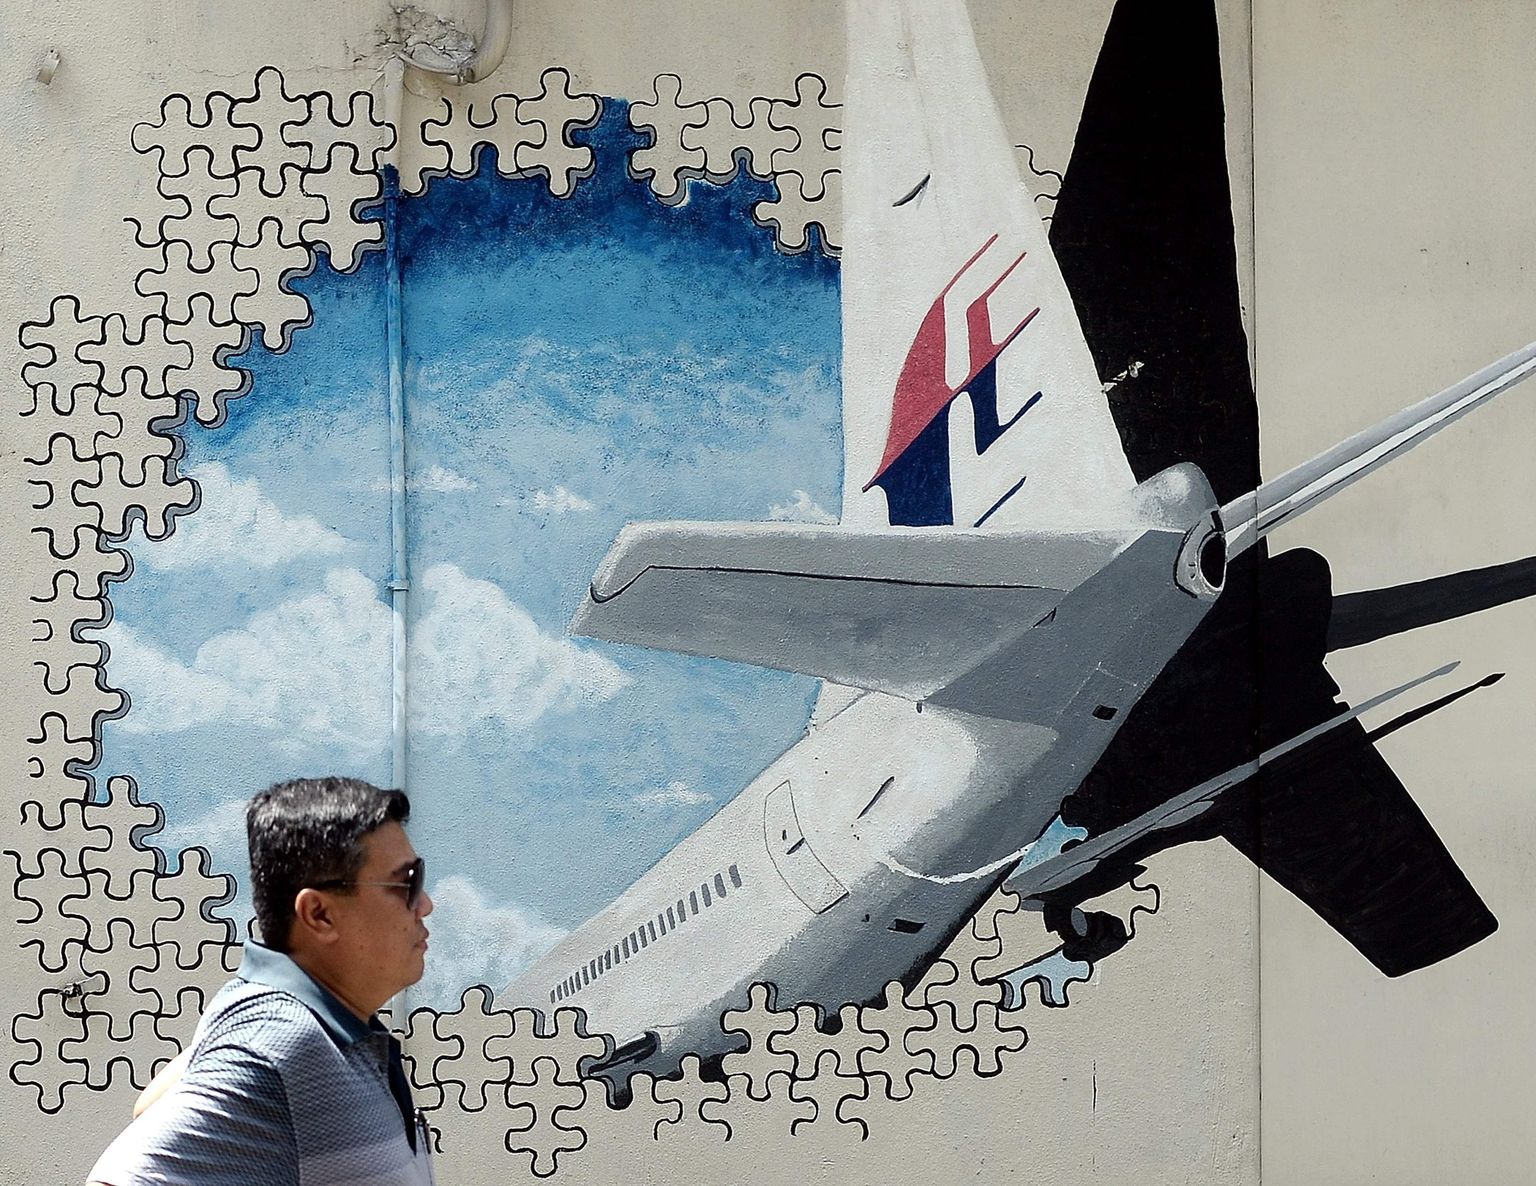 Malaisia mees täna Shah Alamis müürijoonistuse ees, mis on pühendatud MH370 mõistatuslikule kadumisele.